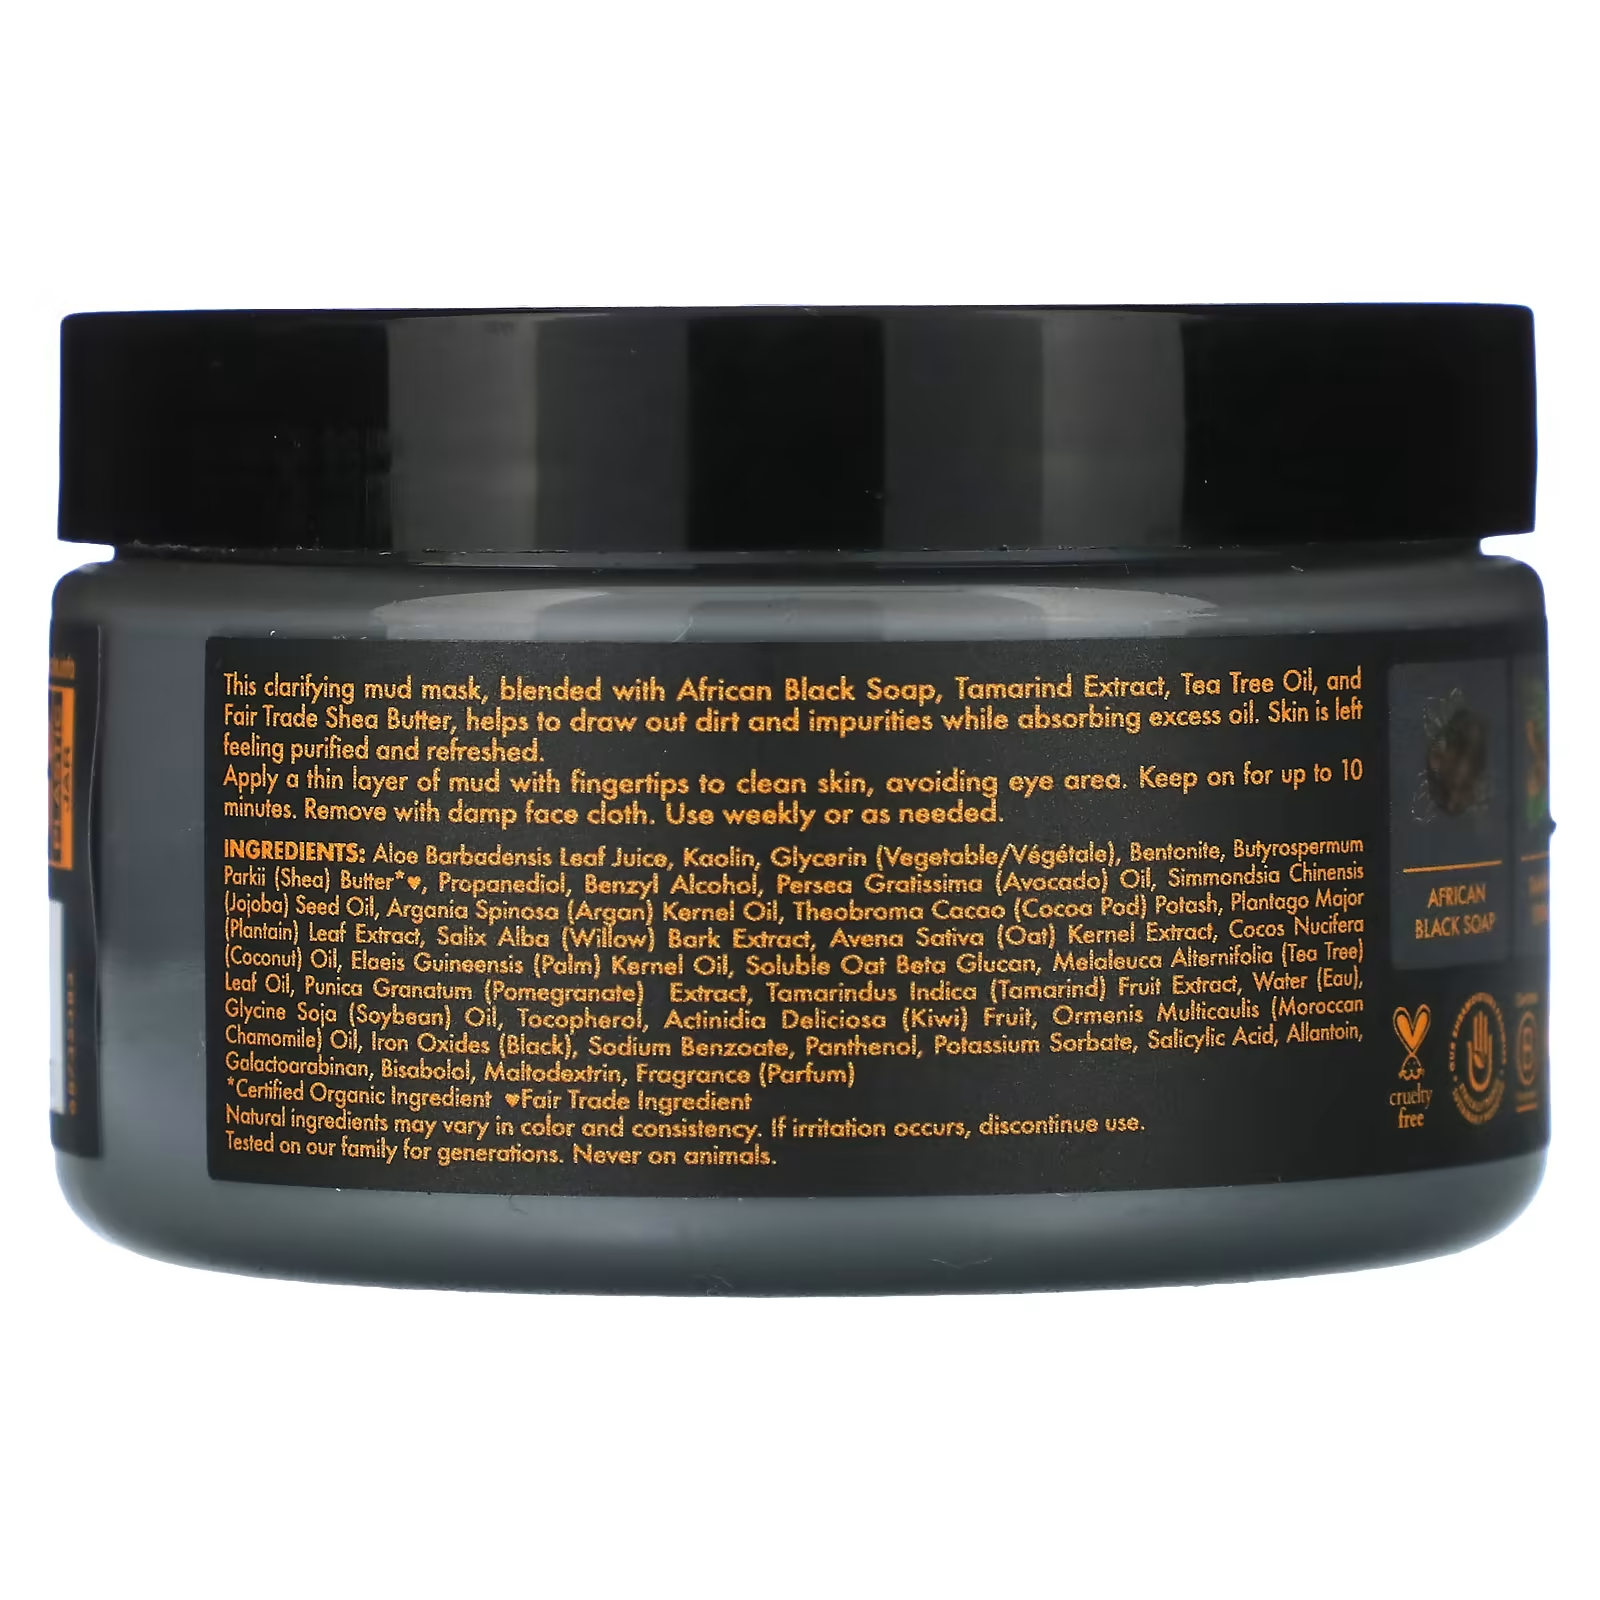 SheaMoisture African Black Soap Очищающая грязевая косметическая маска с экстрактом тамаринда и маслом чайного дерева, 4 унции (113 г)